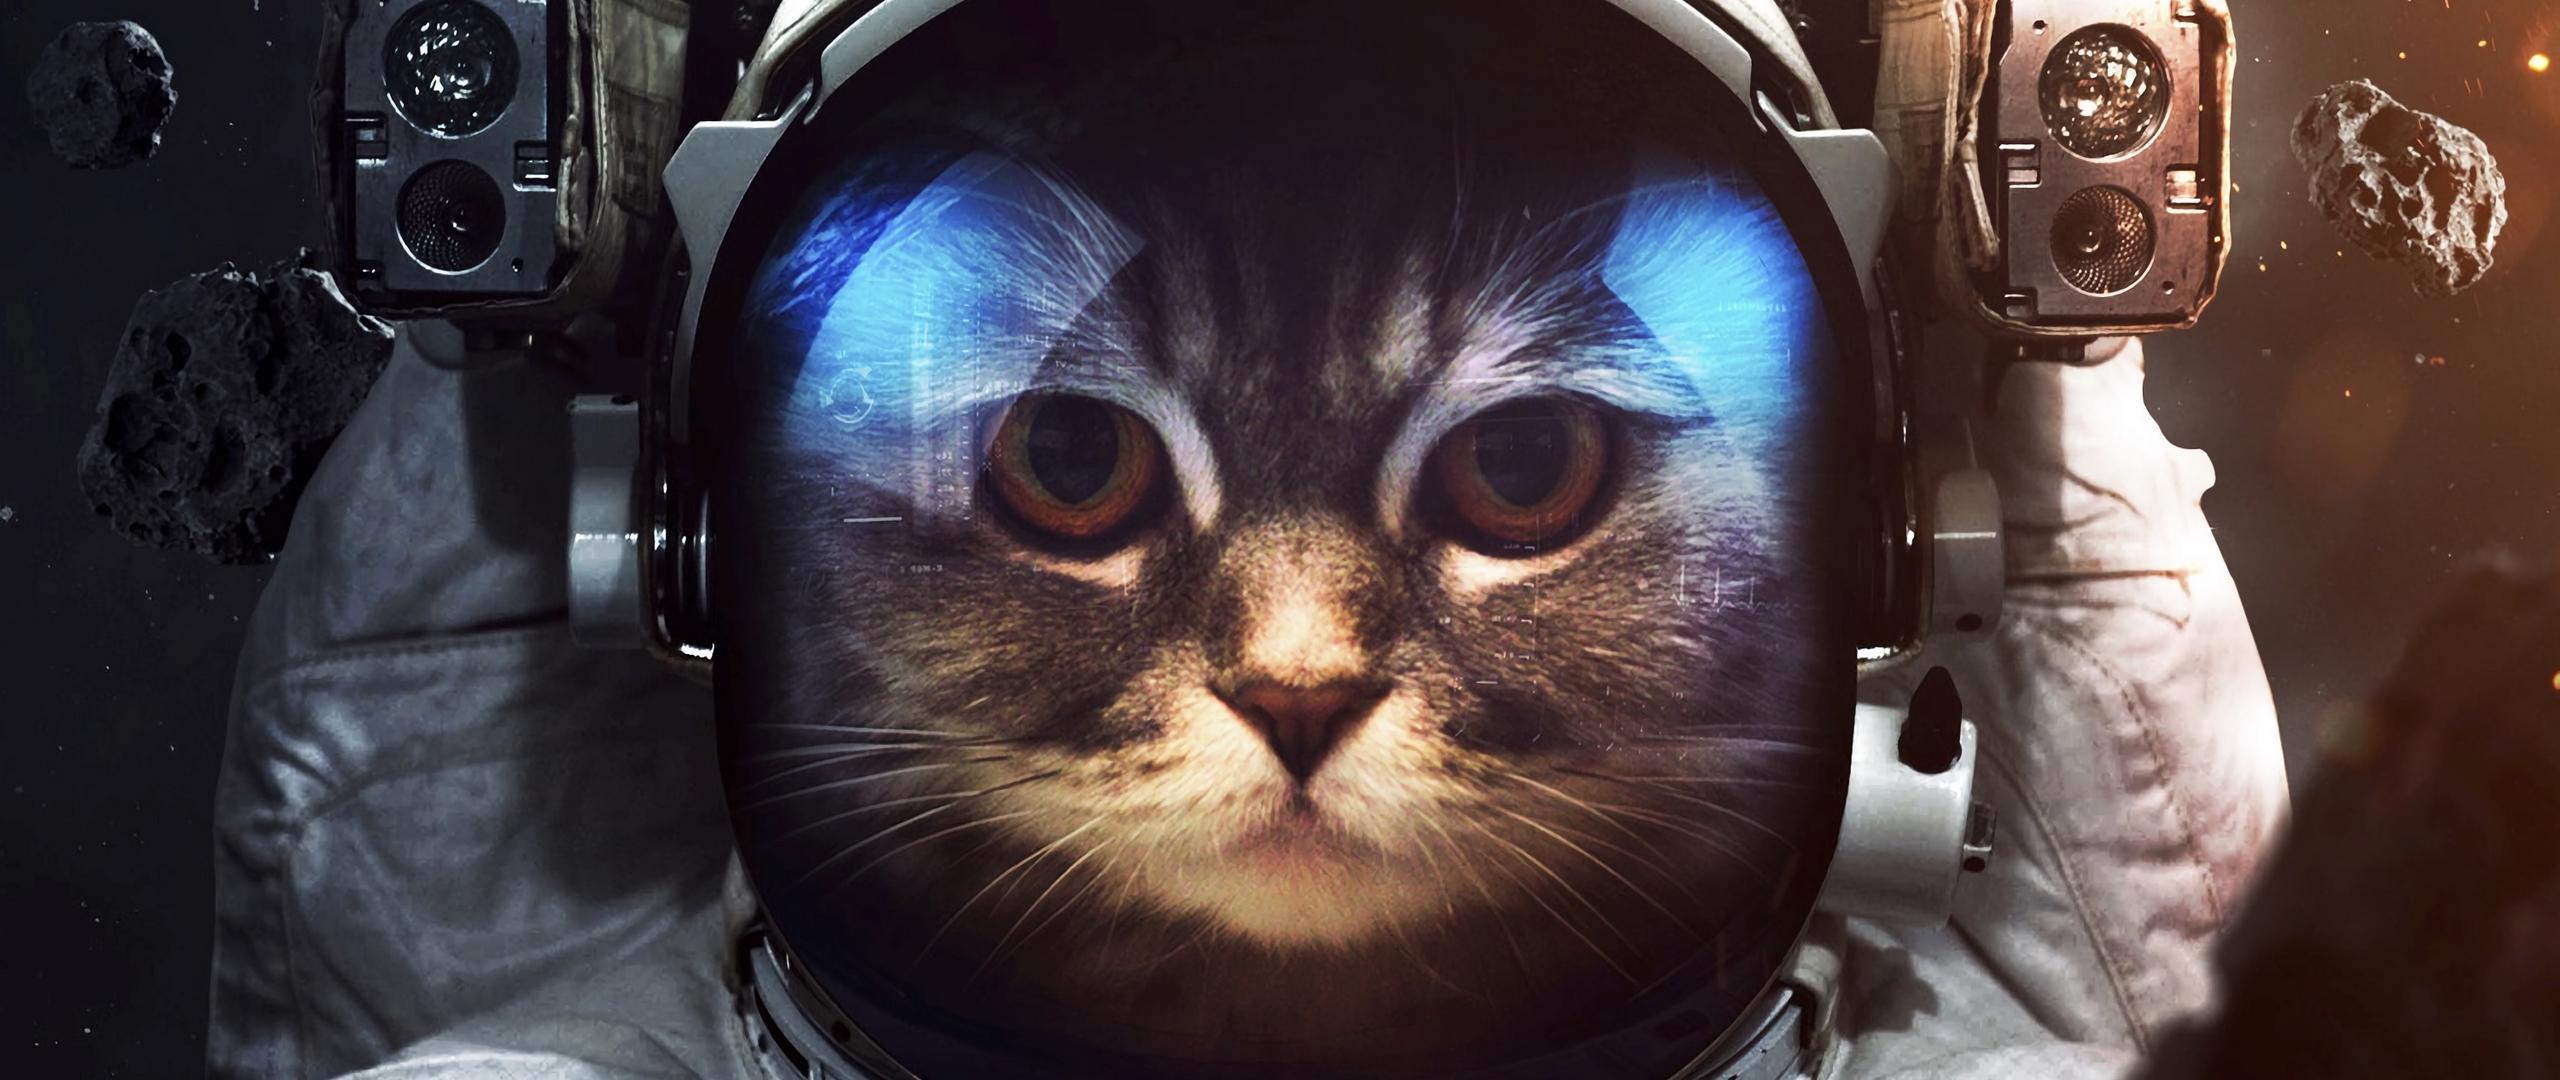 Download wallpaper 2560x1080 cat, cosmonaut, space suit, space